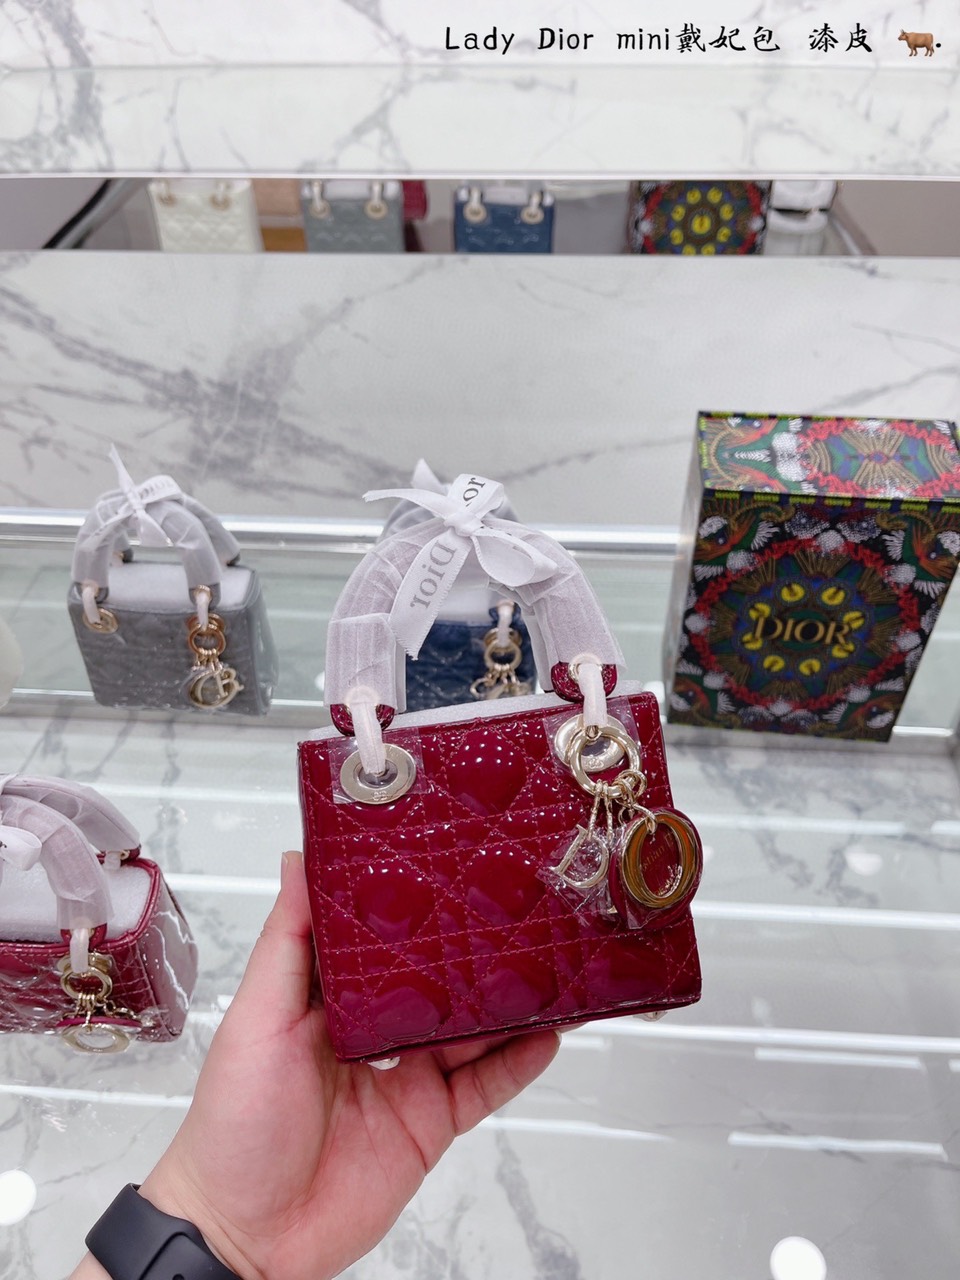 Tổng Hợp Túi Xách Dior Lady Super Micro Bag Da Bóng Tag Vàng Size 12 x 10.2 x 5 cm